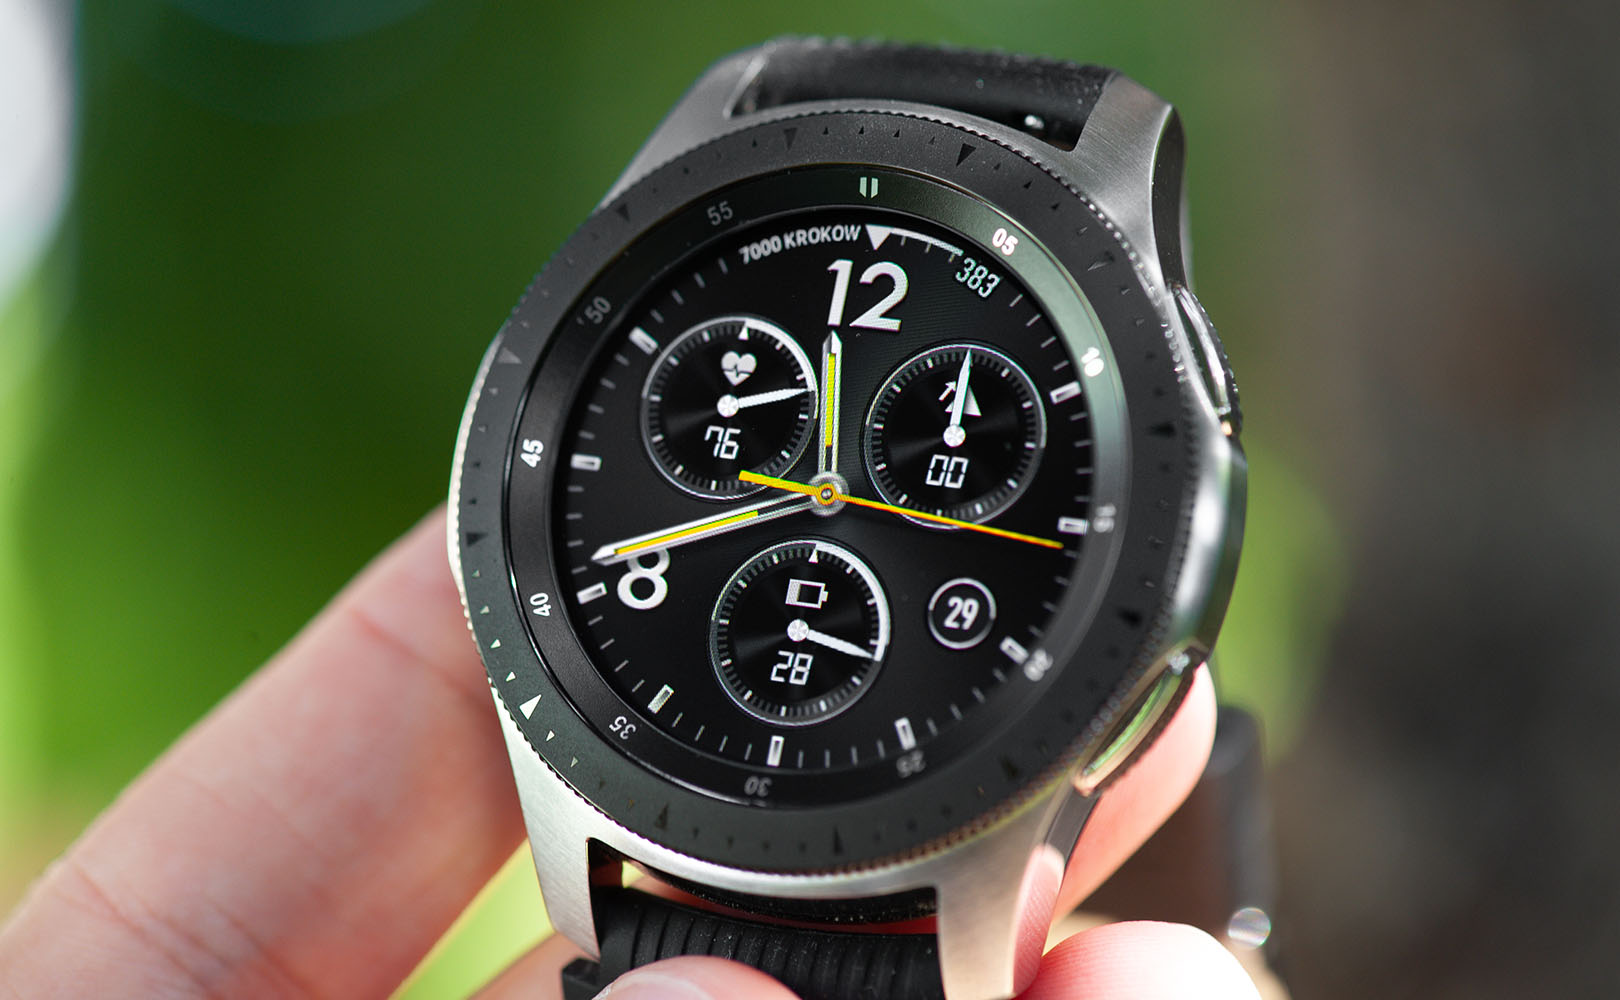 Galaxy watch 46mm. Samsung Galaxy watch r800. Galaxy watch r800. Часы Samsung Galaxy watch r800. Galaxy watch 46 mm Case 2022.